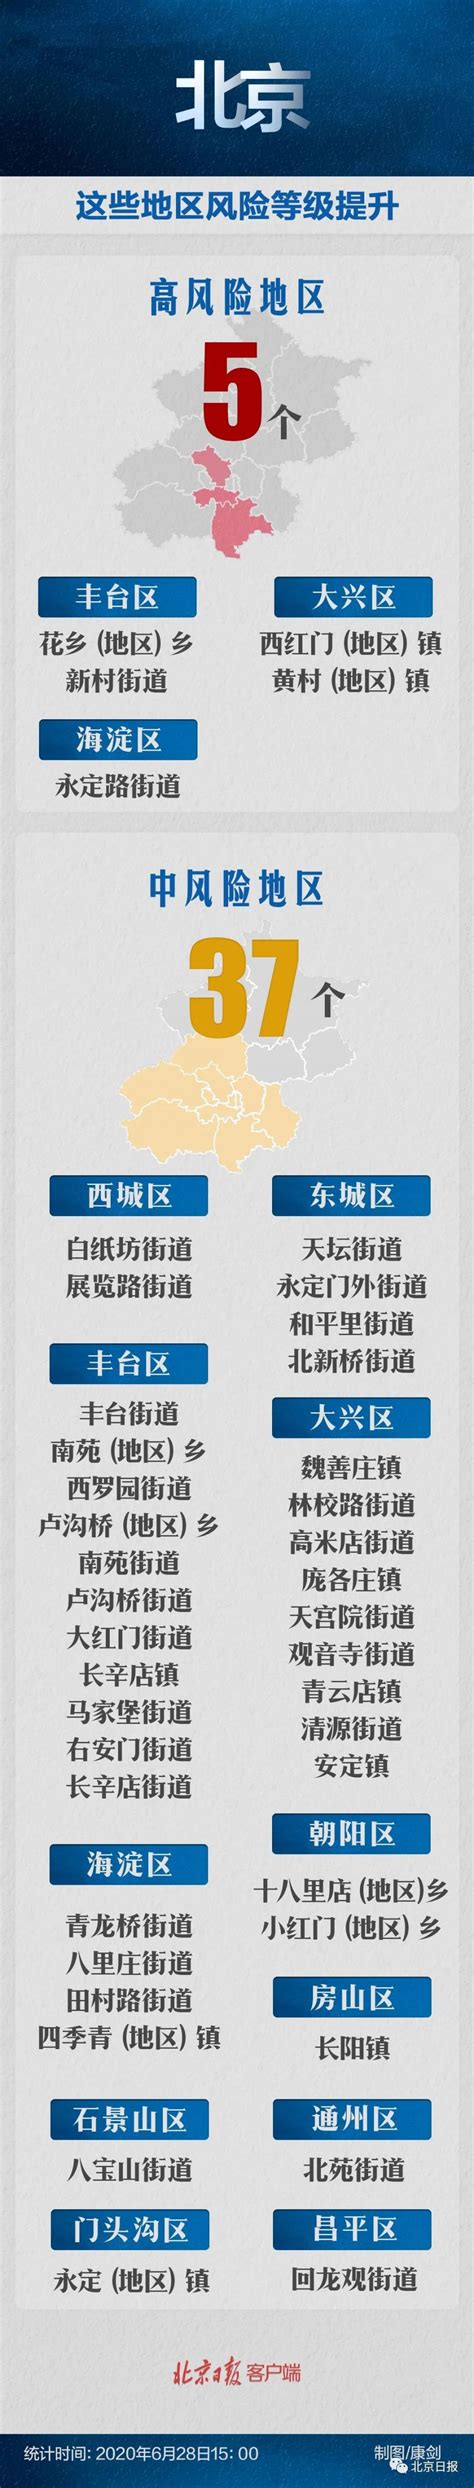 北京28个疫情中高风险地区地图来了-千龙网·中国首都网